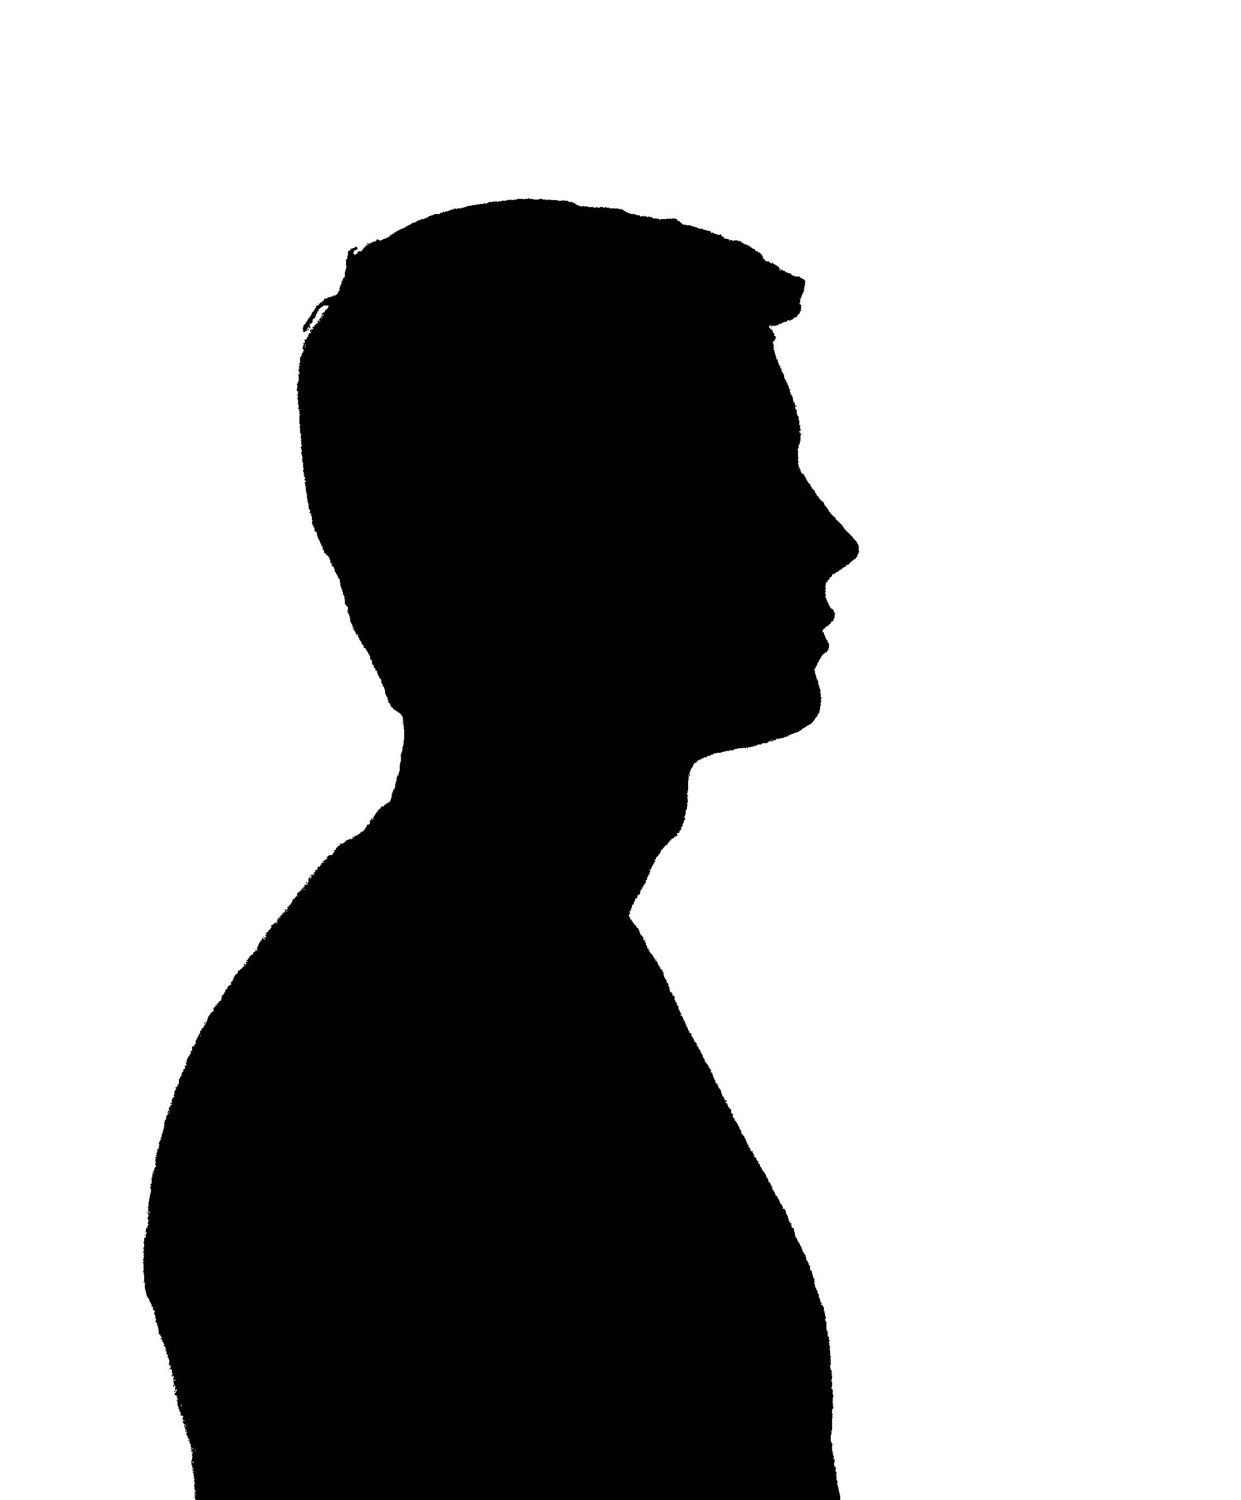 Person Side Profile Silhouette - Silhouette Side Profile Man Face ...